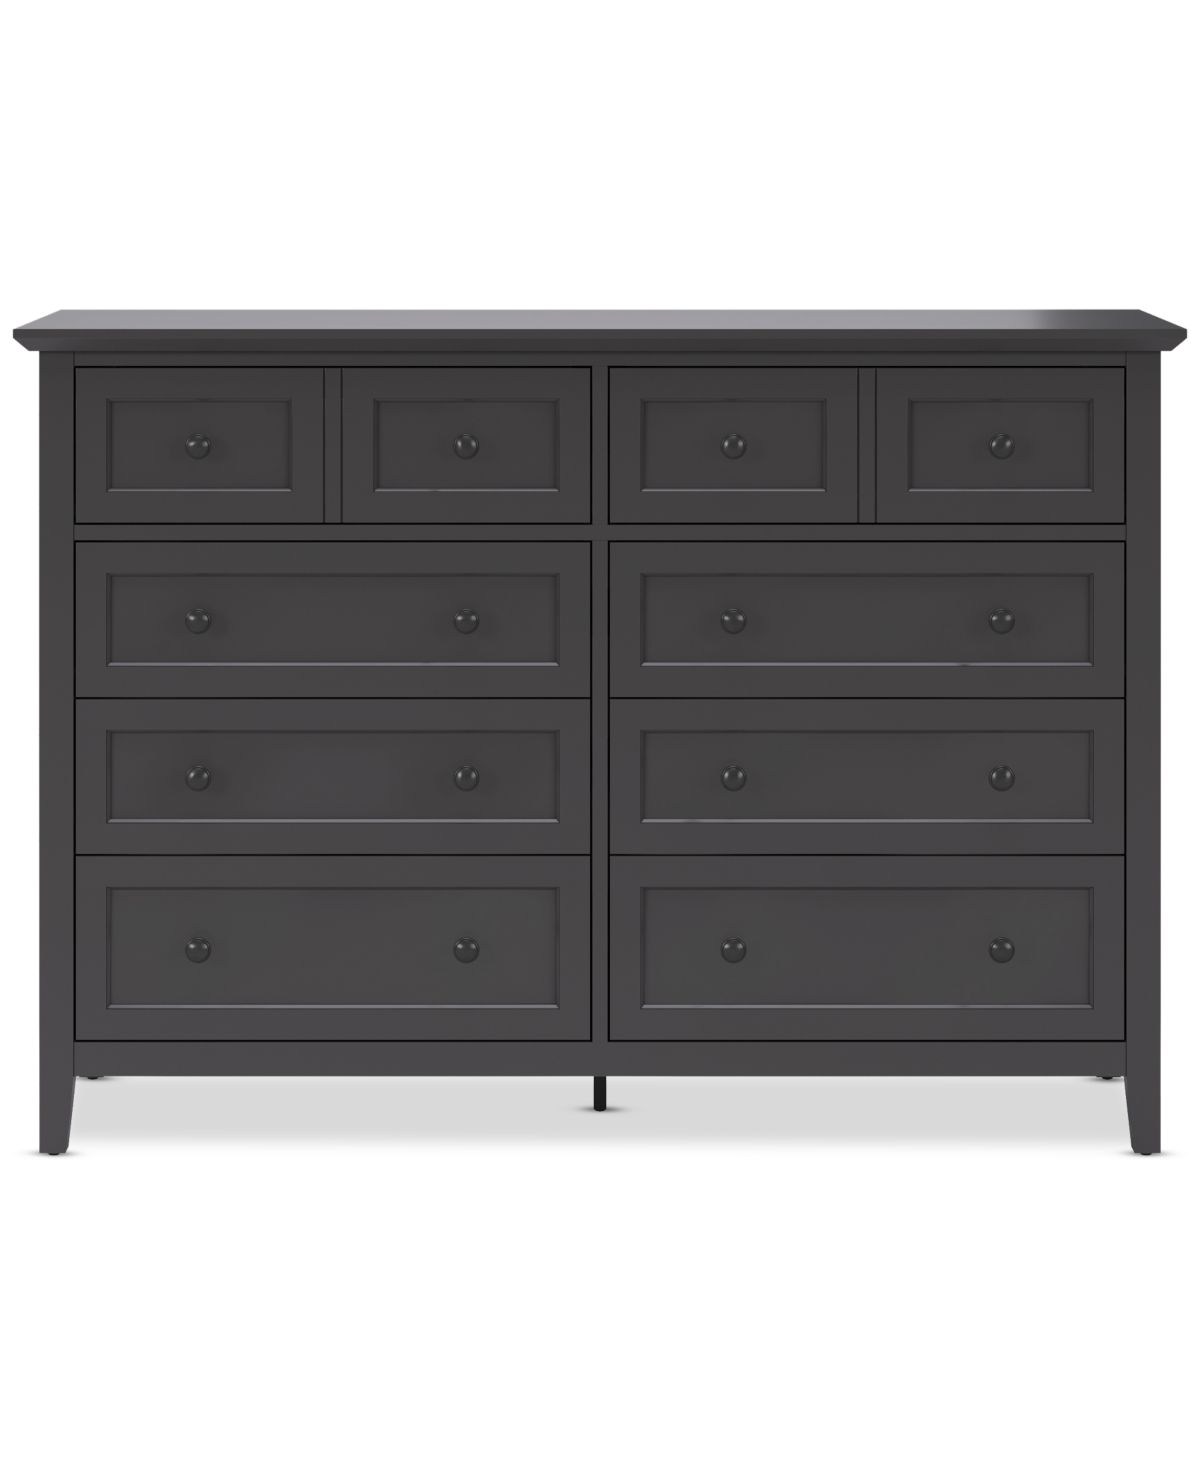 Furniture Hedworth Dresser In Black